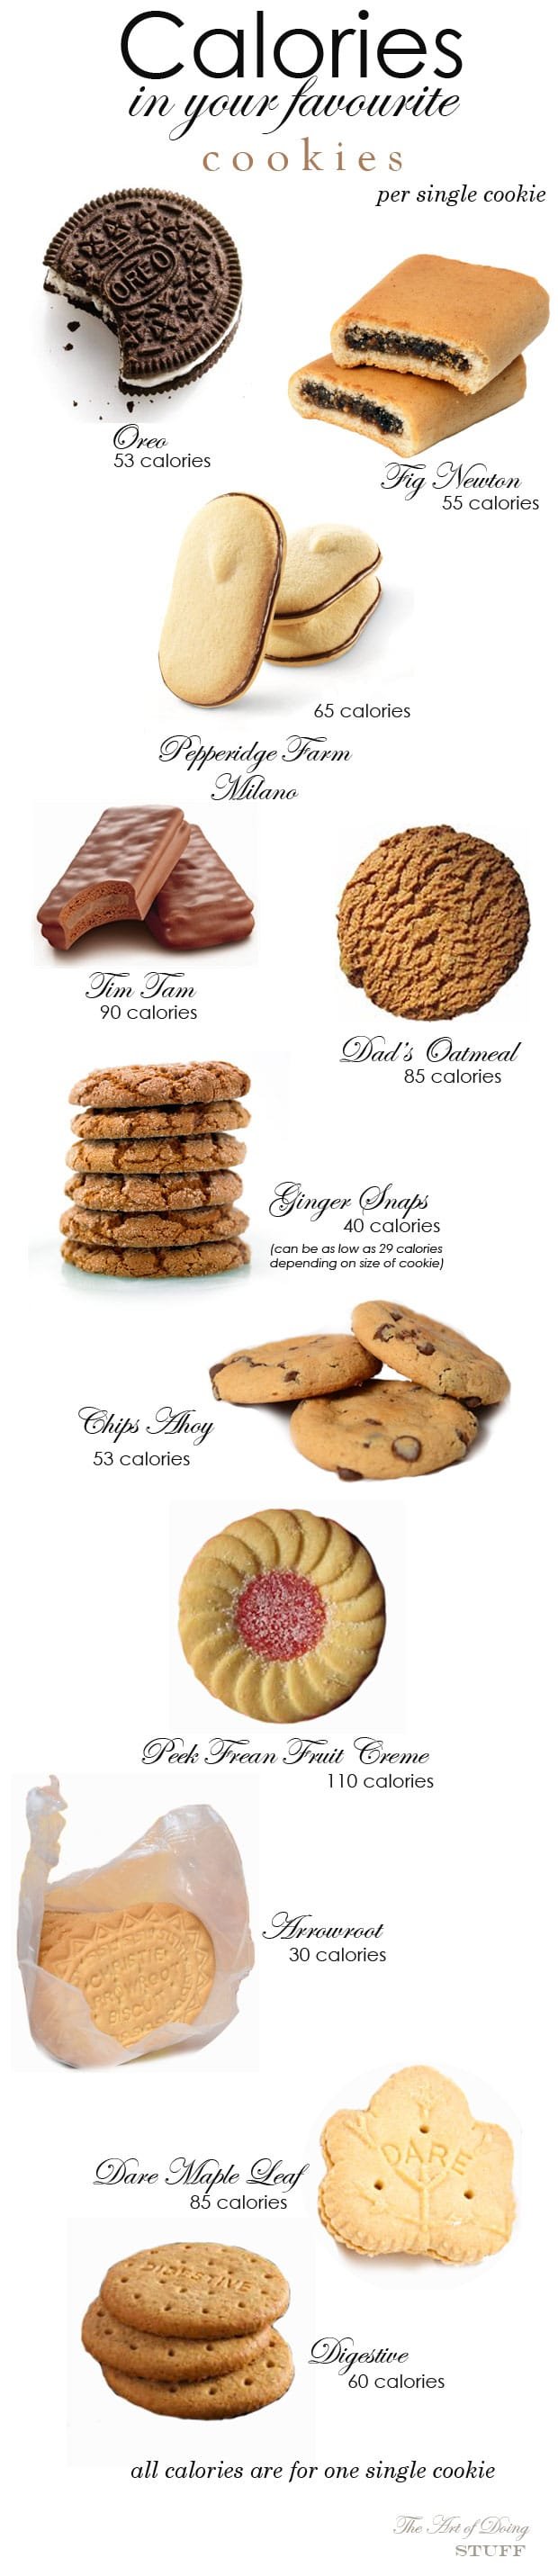 Calories In Popular Cookies The Art Of Doing Stuff